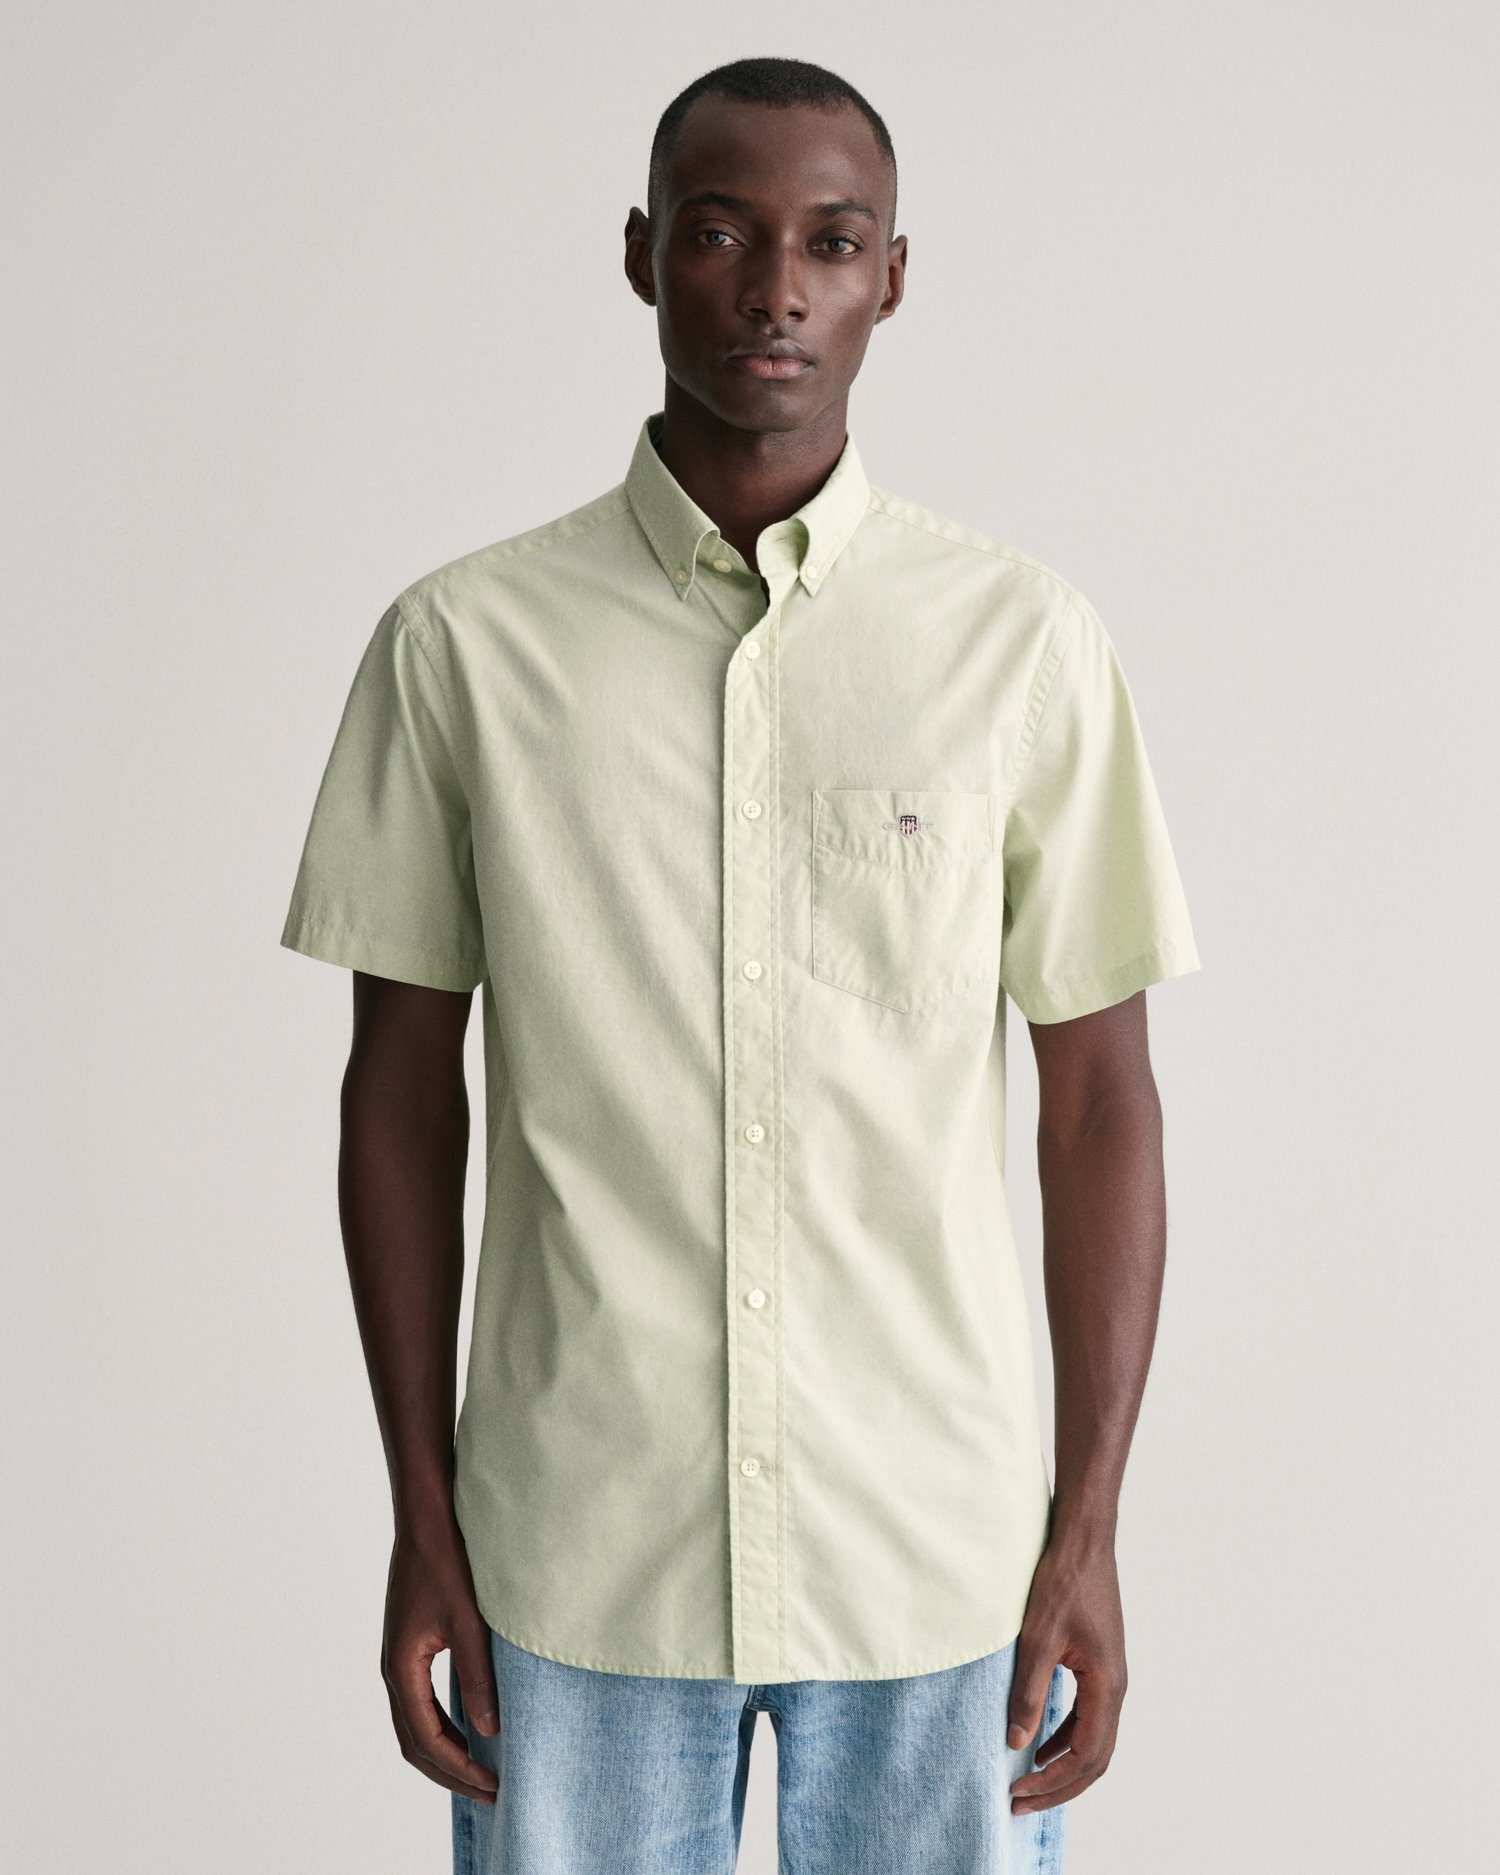 Gant Overhemd met korte mouwen Regular fit poplin overhemd licht slijtvast easy care